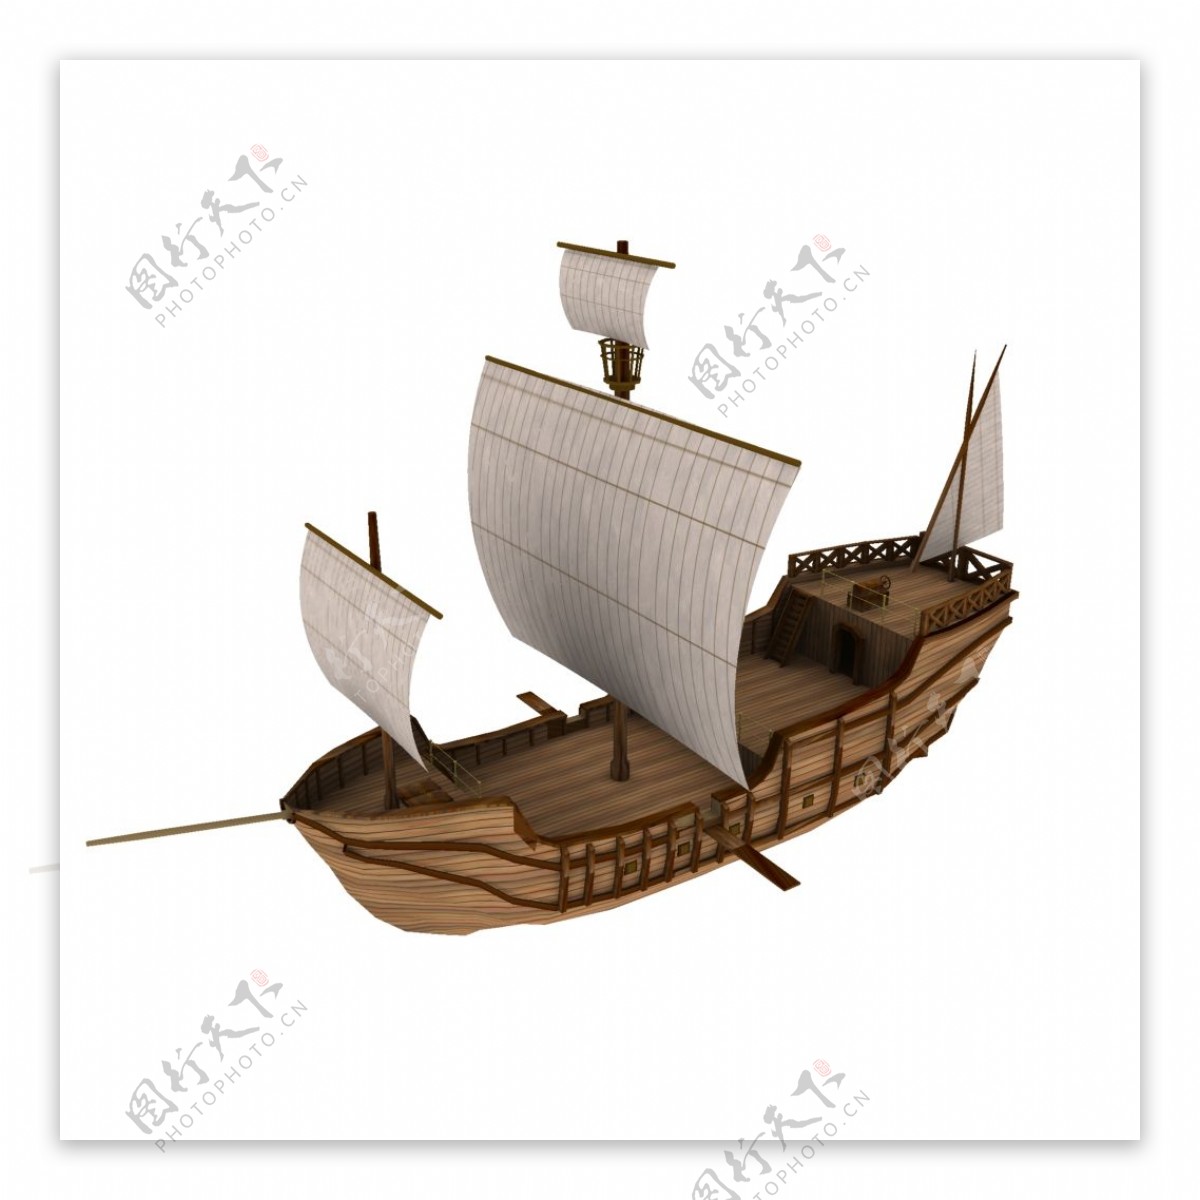 木船模型